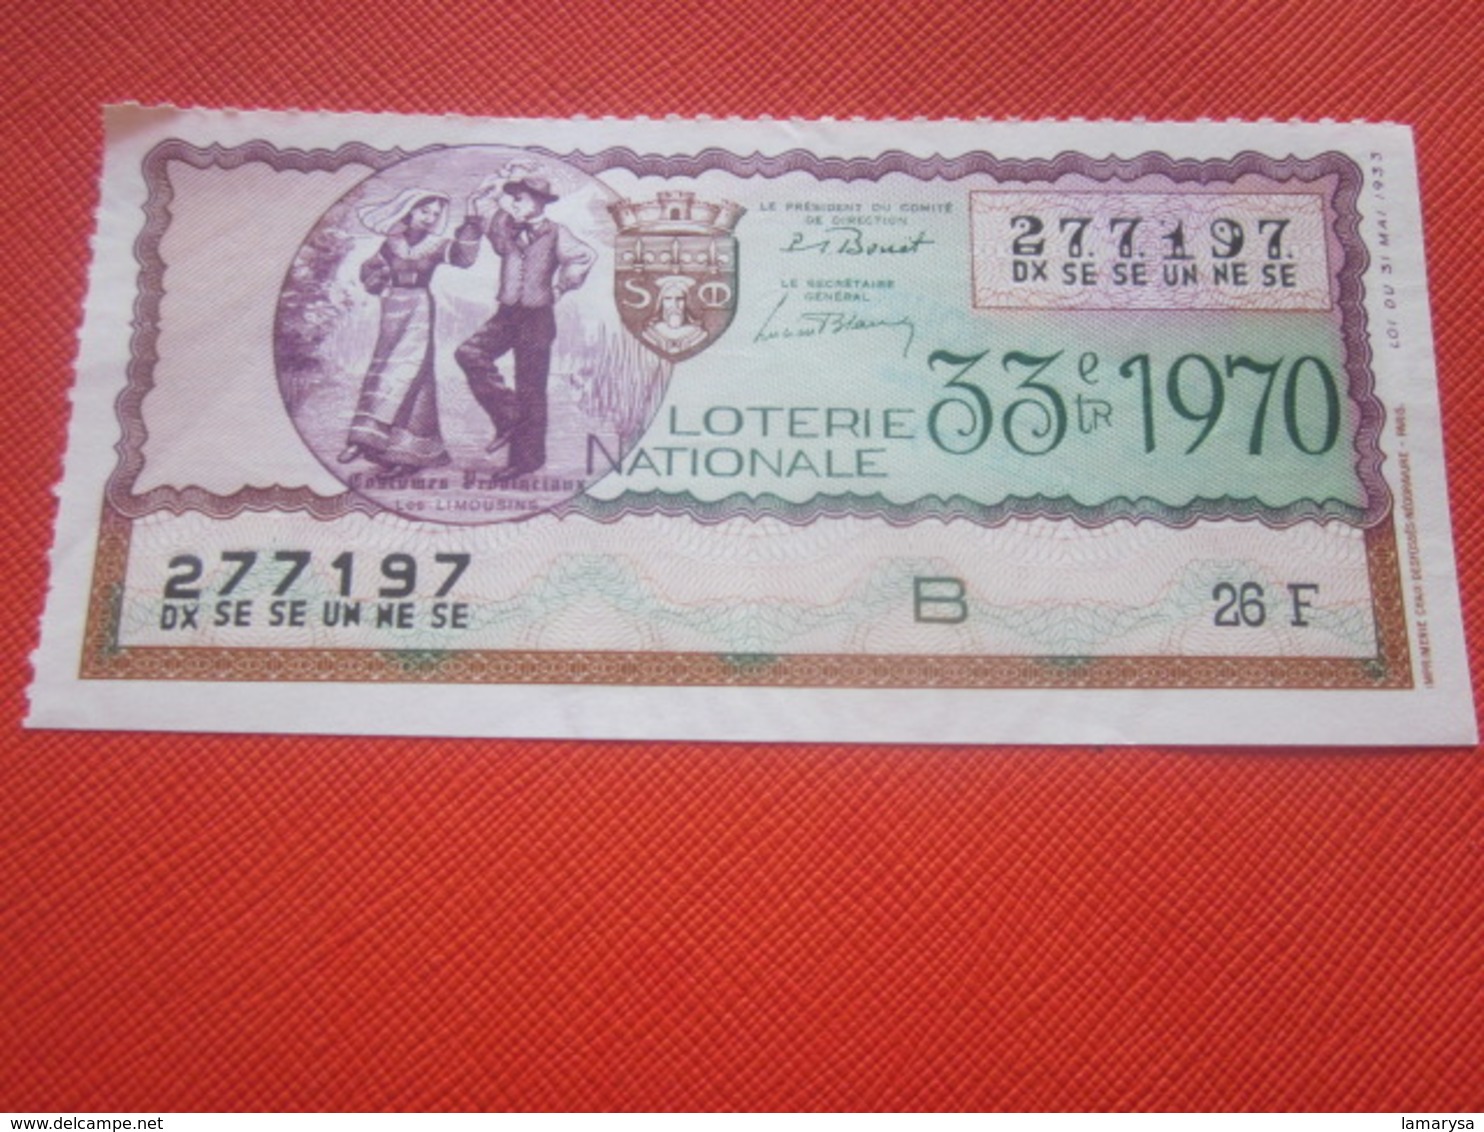 1970-LES LIMOUSINS-COSTUMES PROVINCIAUX- - Billet De La Loterie Nationale- IMPRIMÉE TAILLE DOUCE - Billets De Loterie